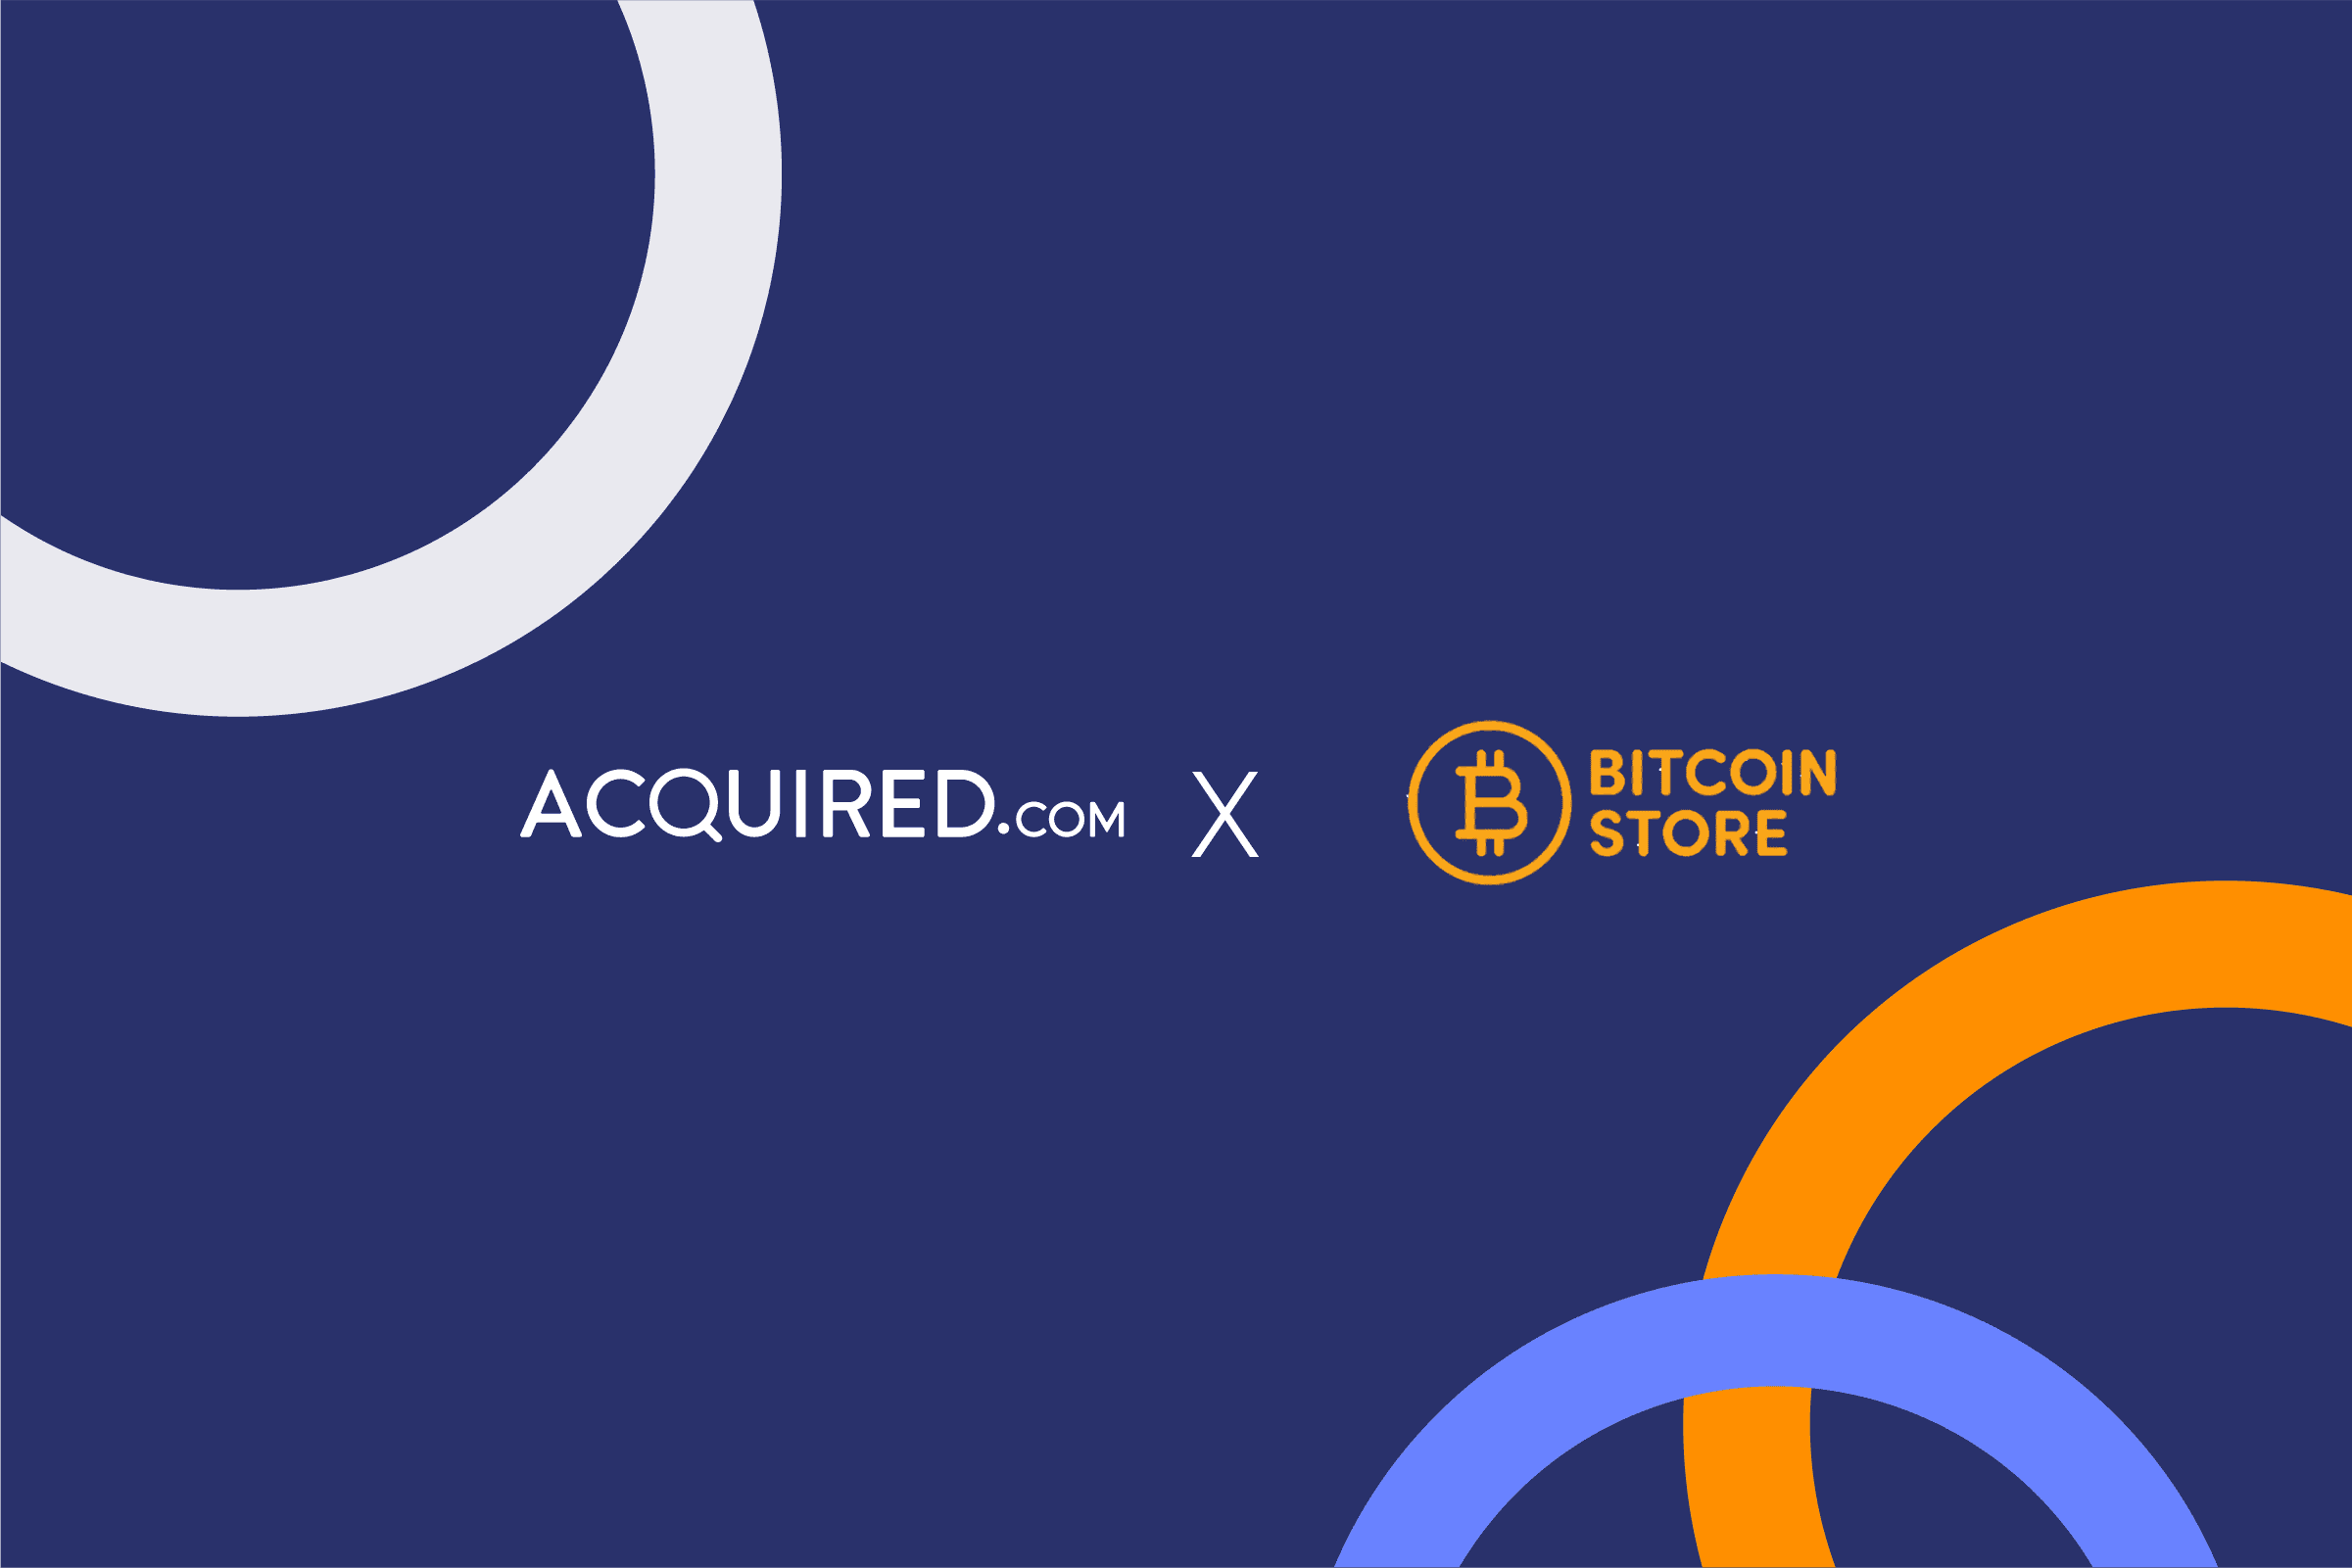 Acquired.com x bitcoin store